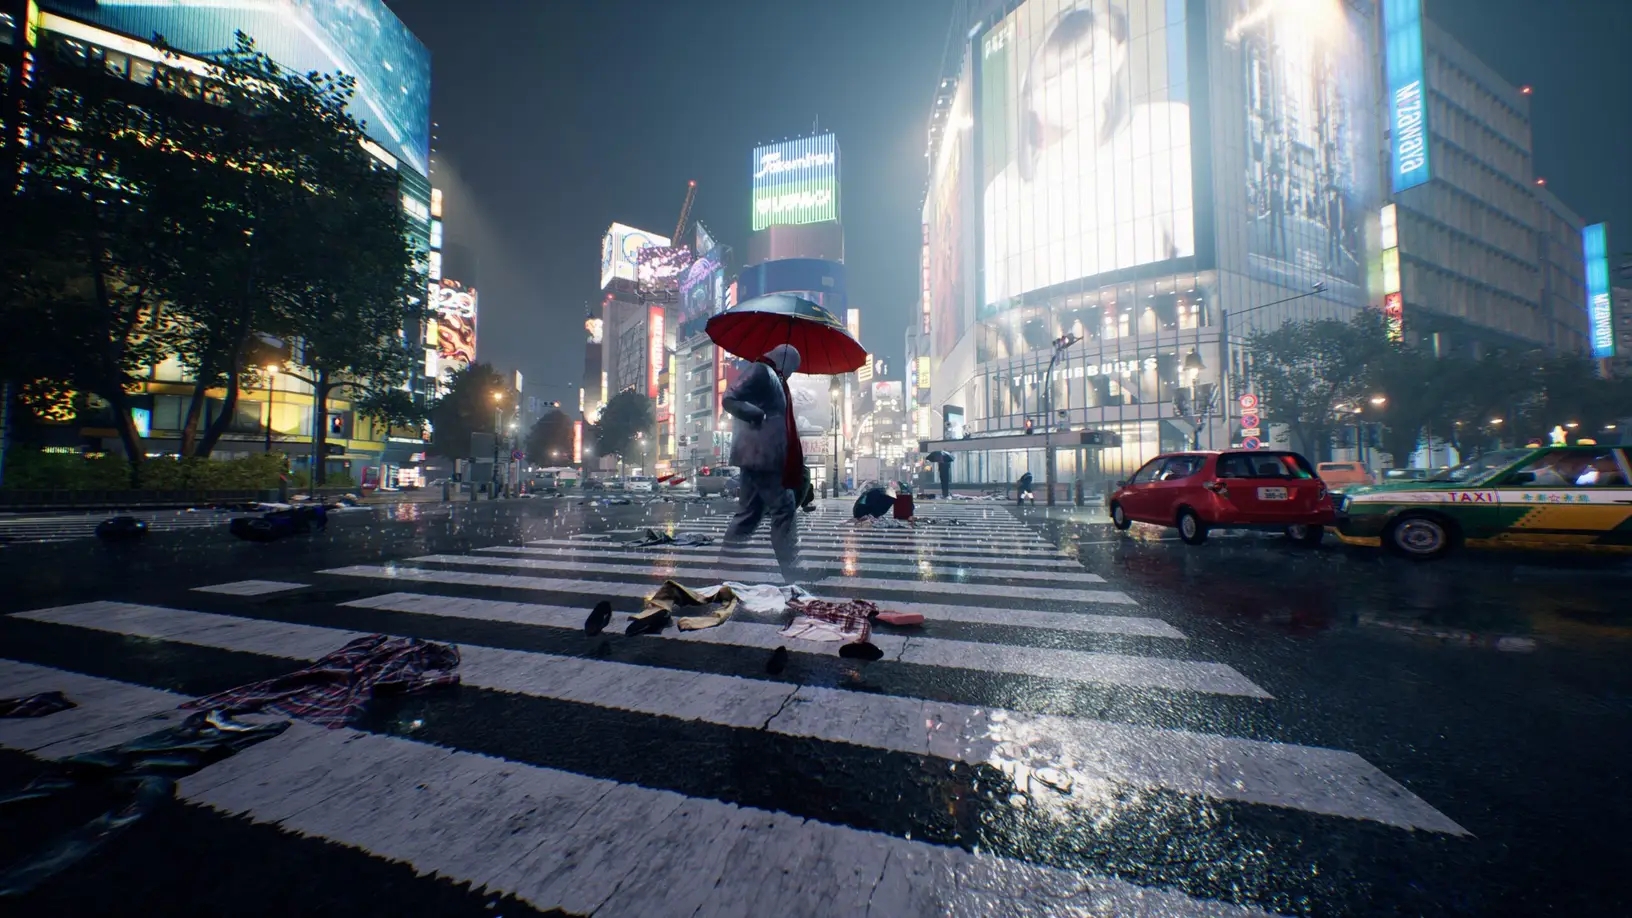 《幽灵线 东京》3月25日正式发售 官方公布玩法提示